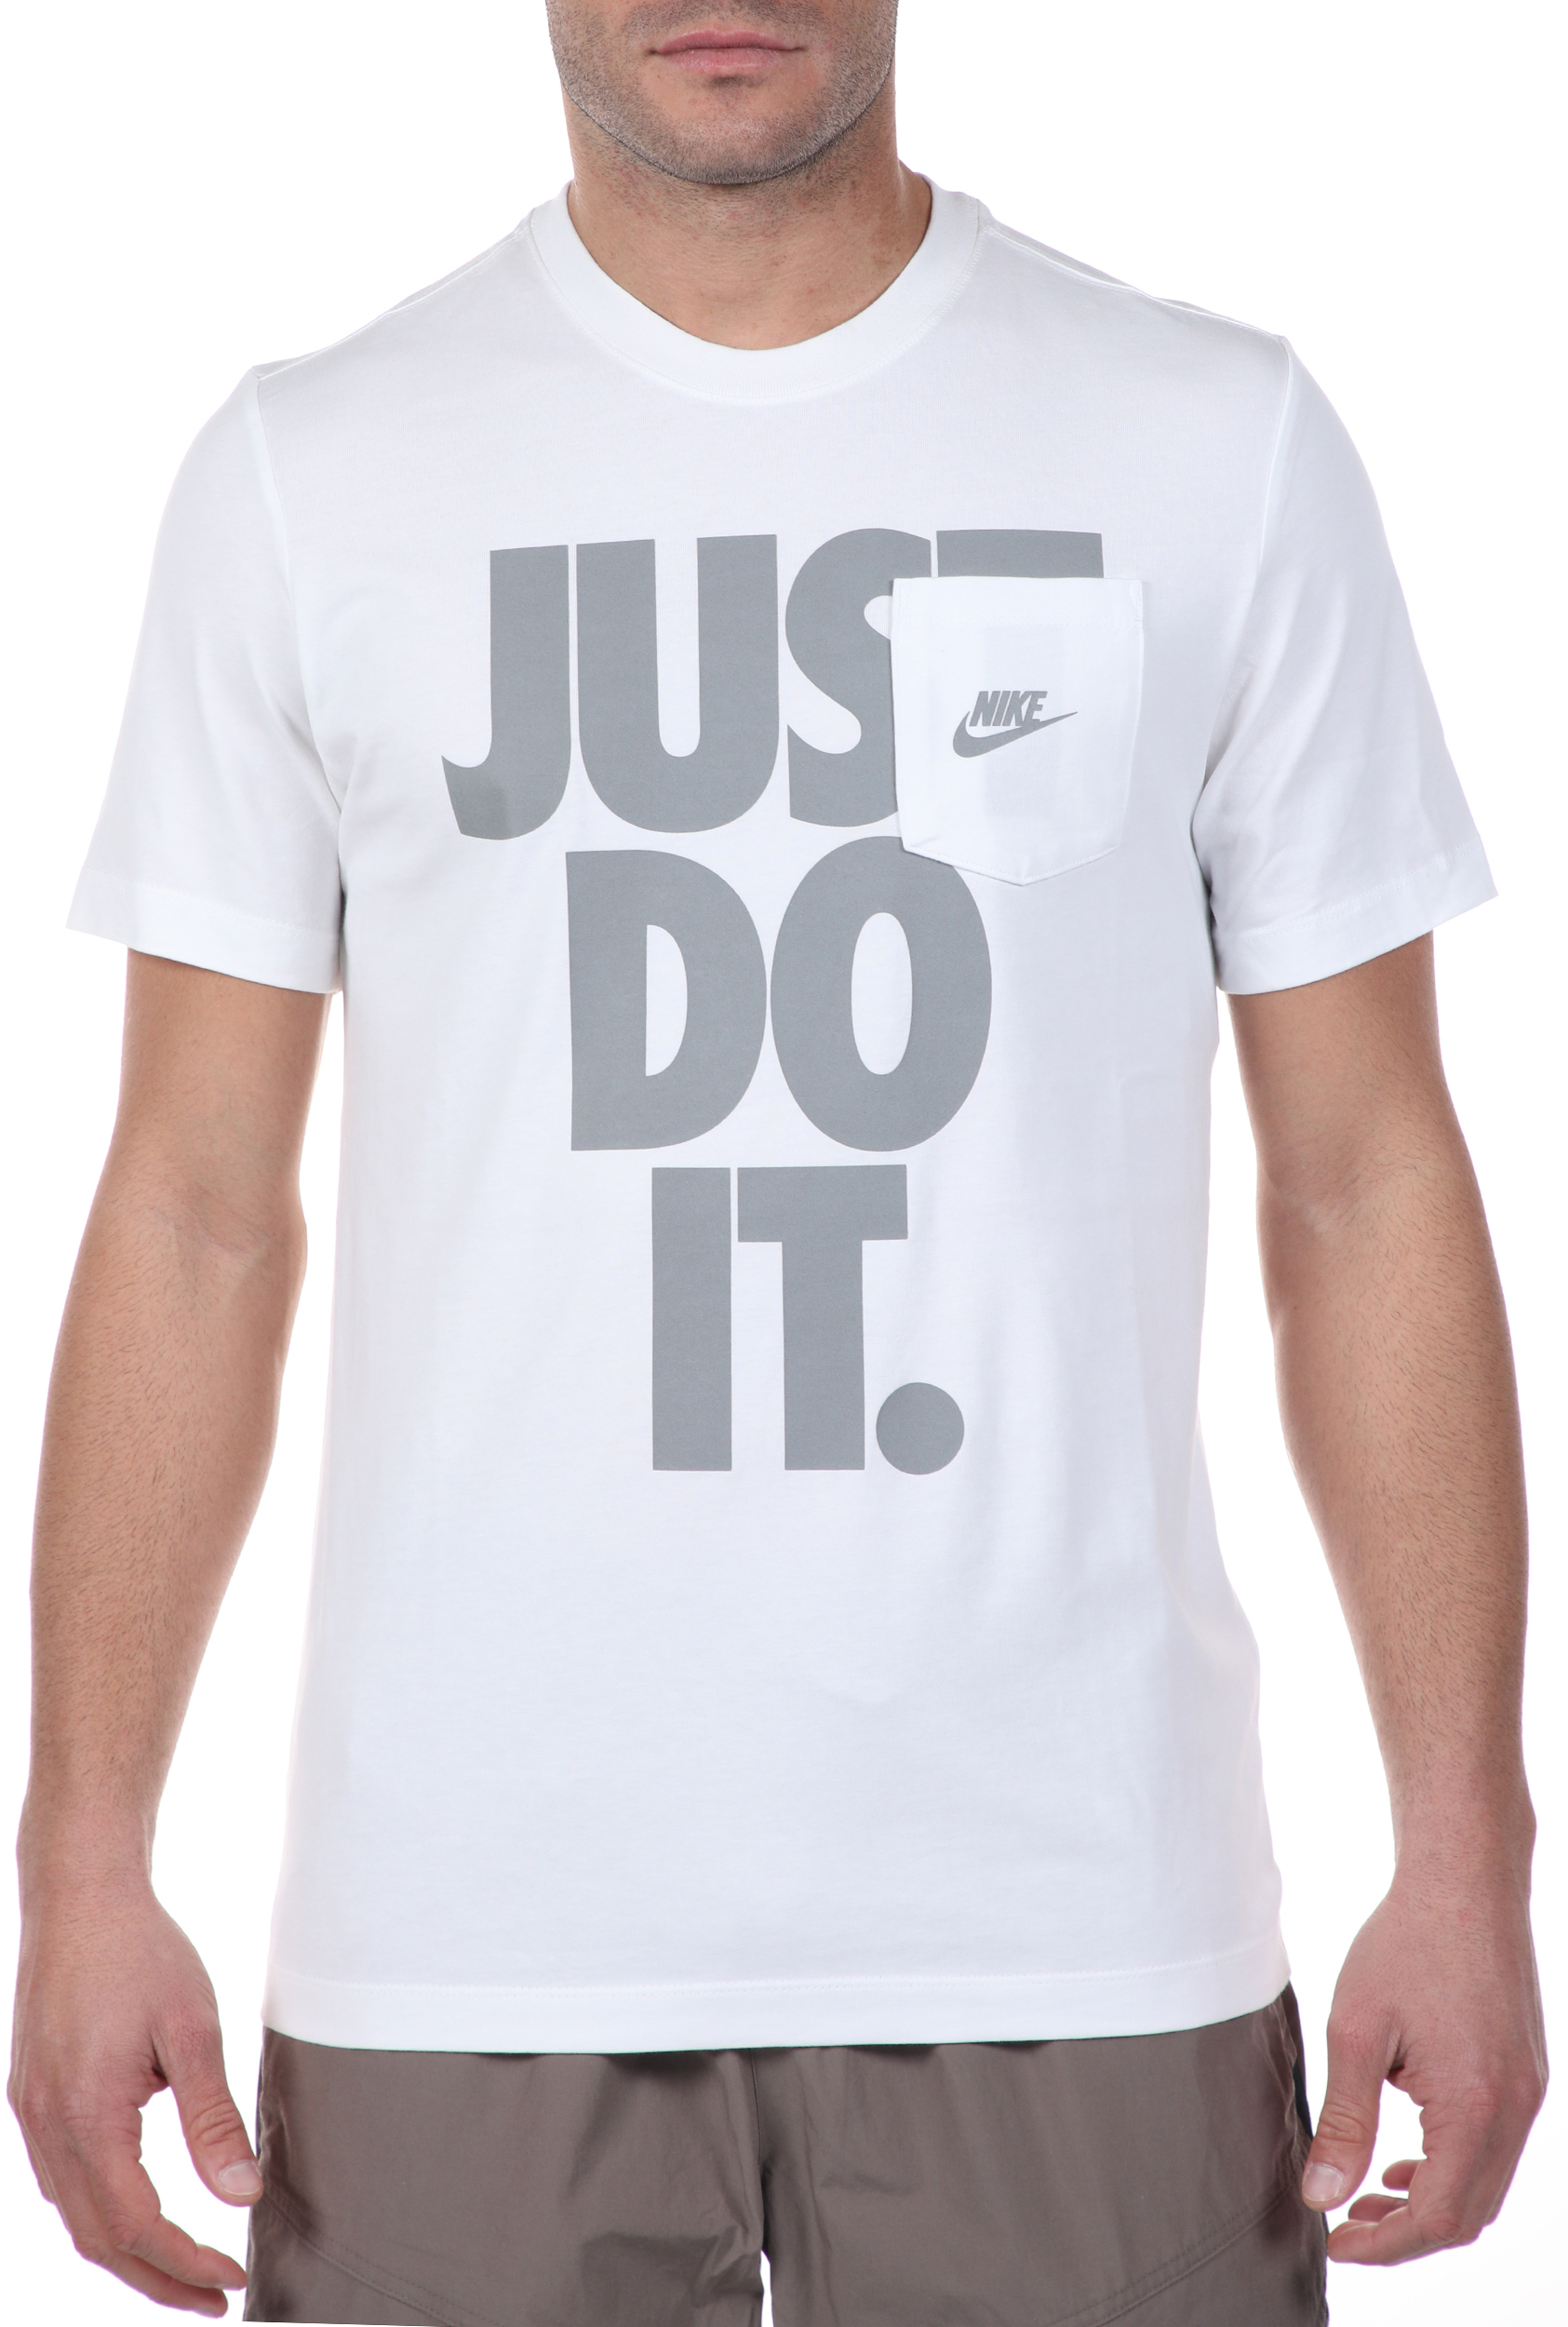 Ανδρικά/Ρούχα/Αθλητικά/T-shirt NIKE - Ανδρικό t-shirt NIKE NSW SS TEE JDI POCKET HBR λευκό